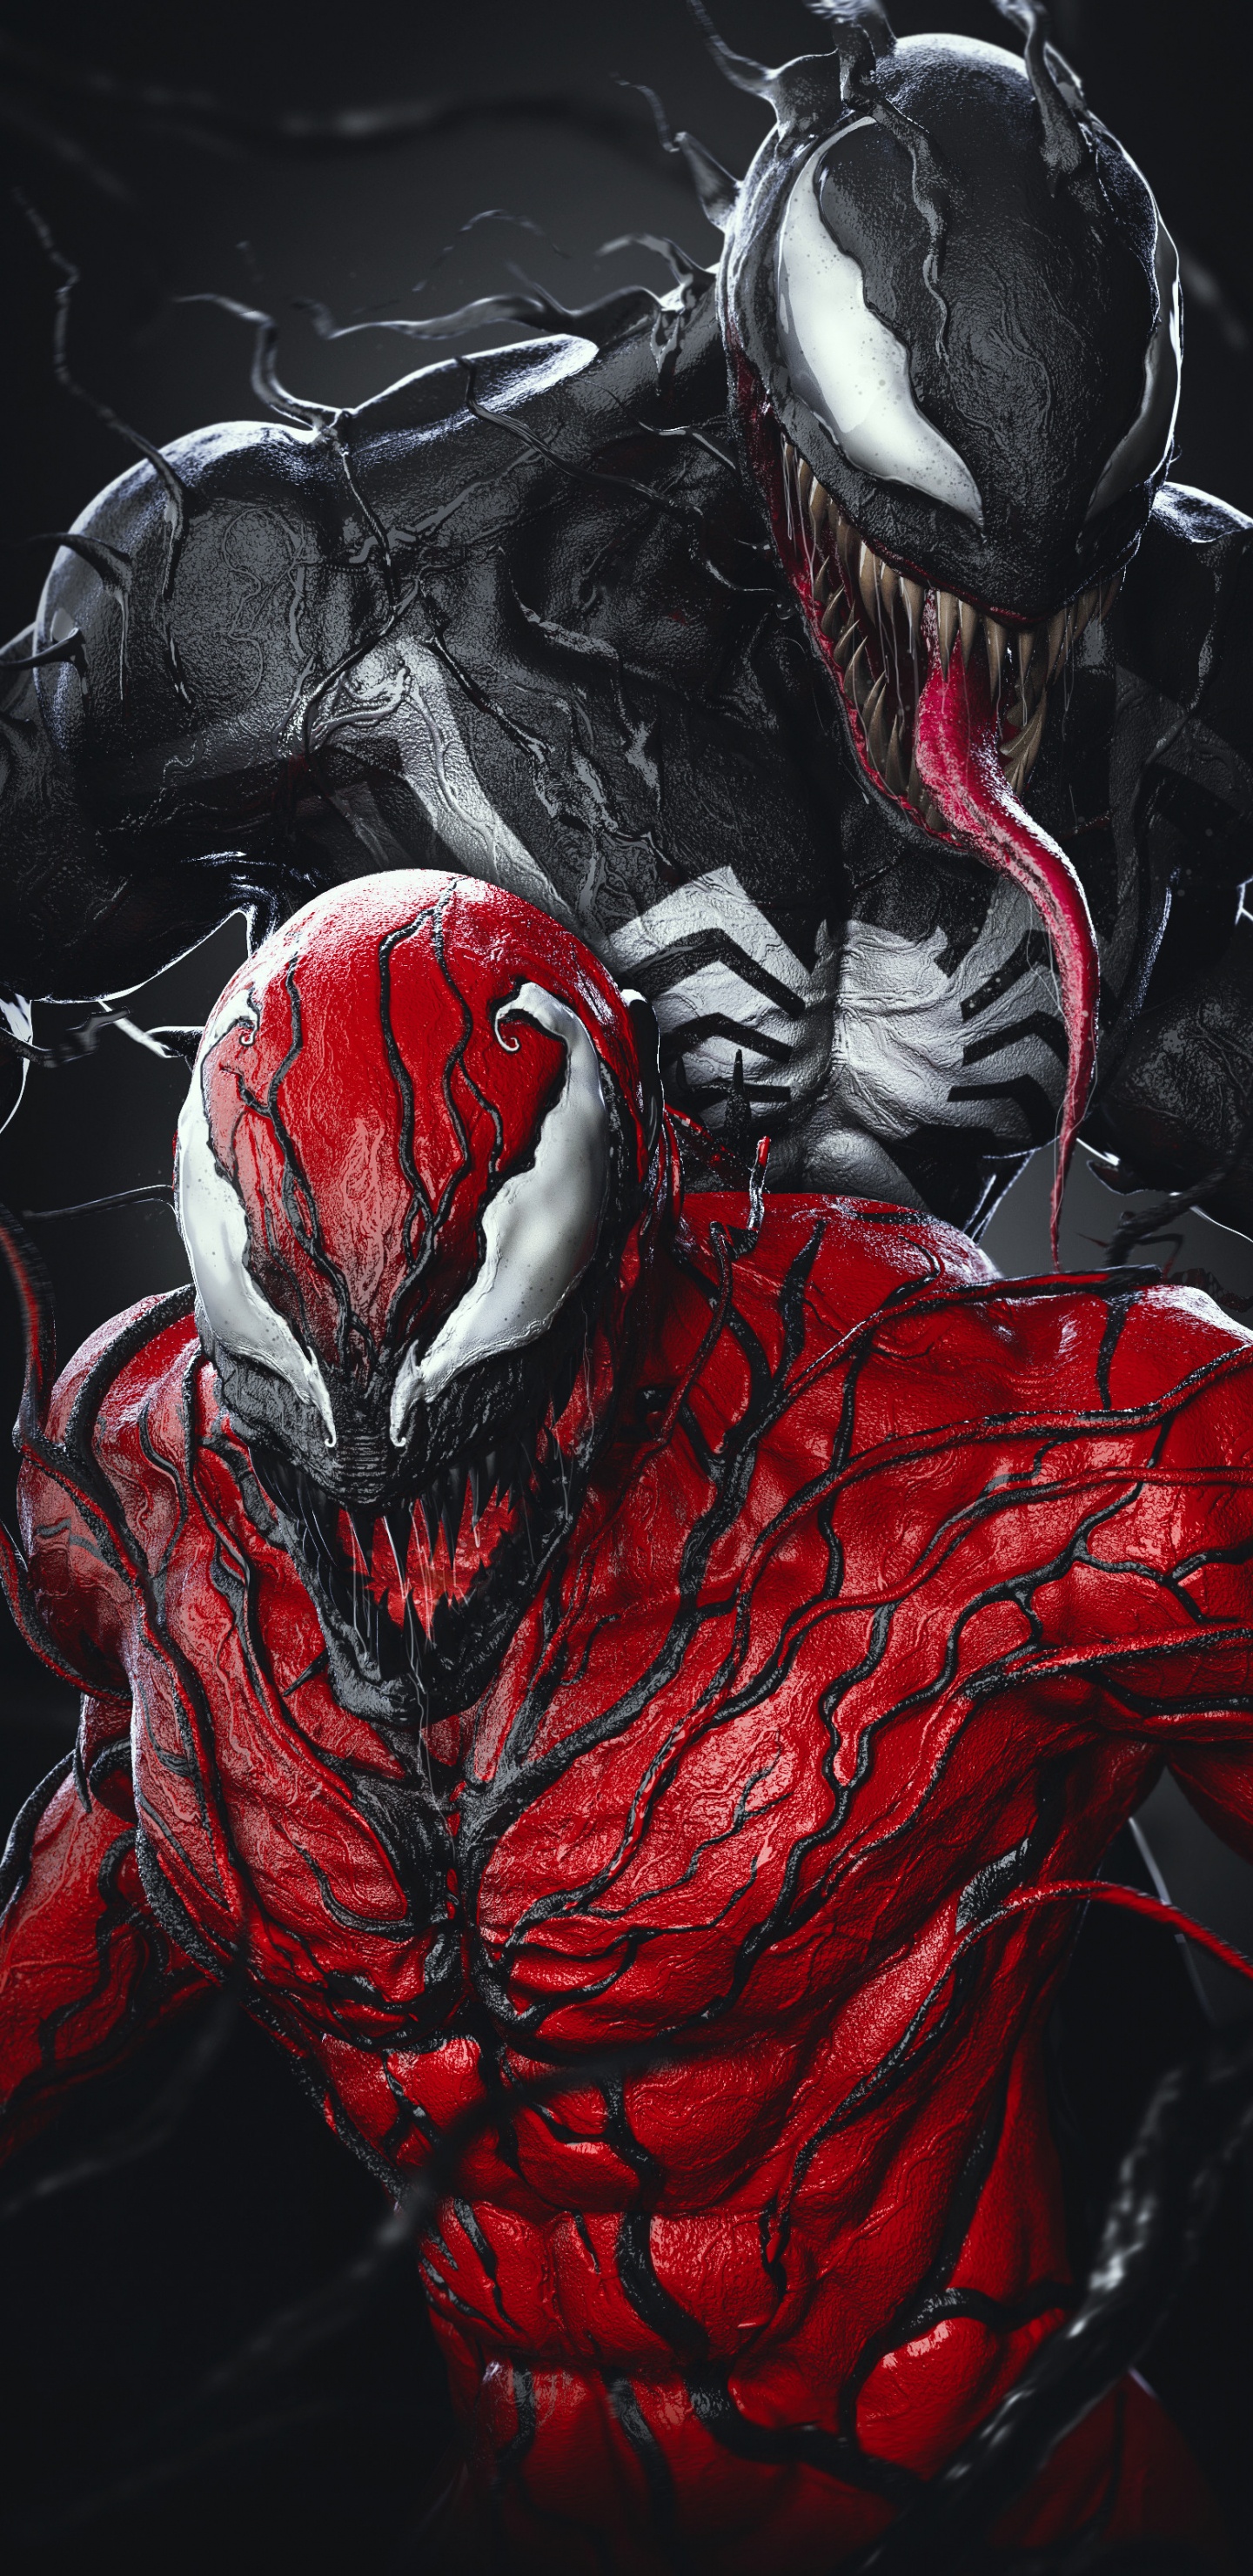 SpiderMan vs Venom 4K Wallpaper for iPhone